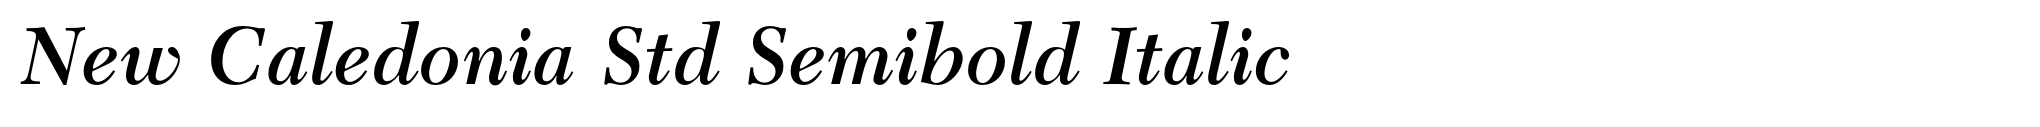 New Caledonia Std Semibold Italic image